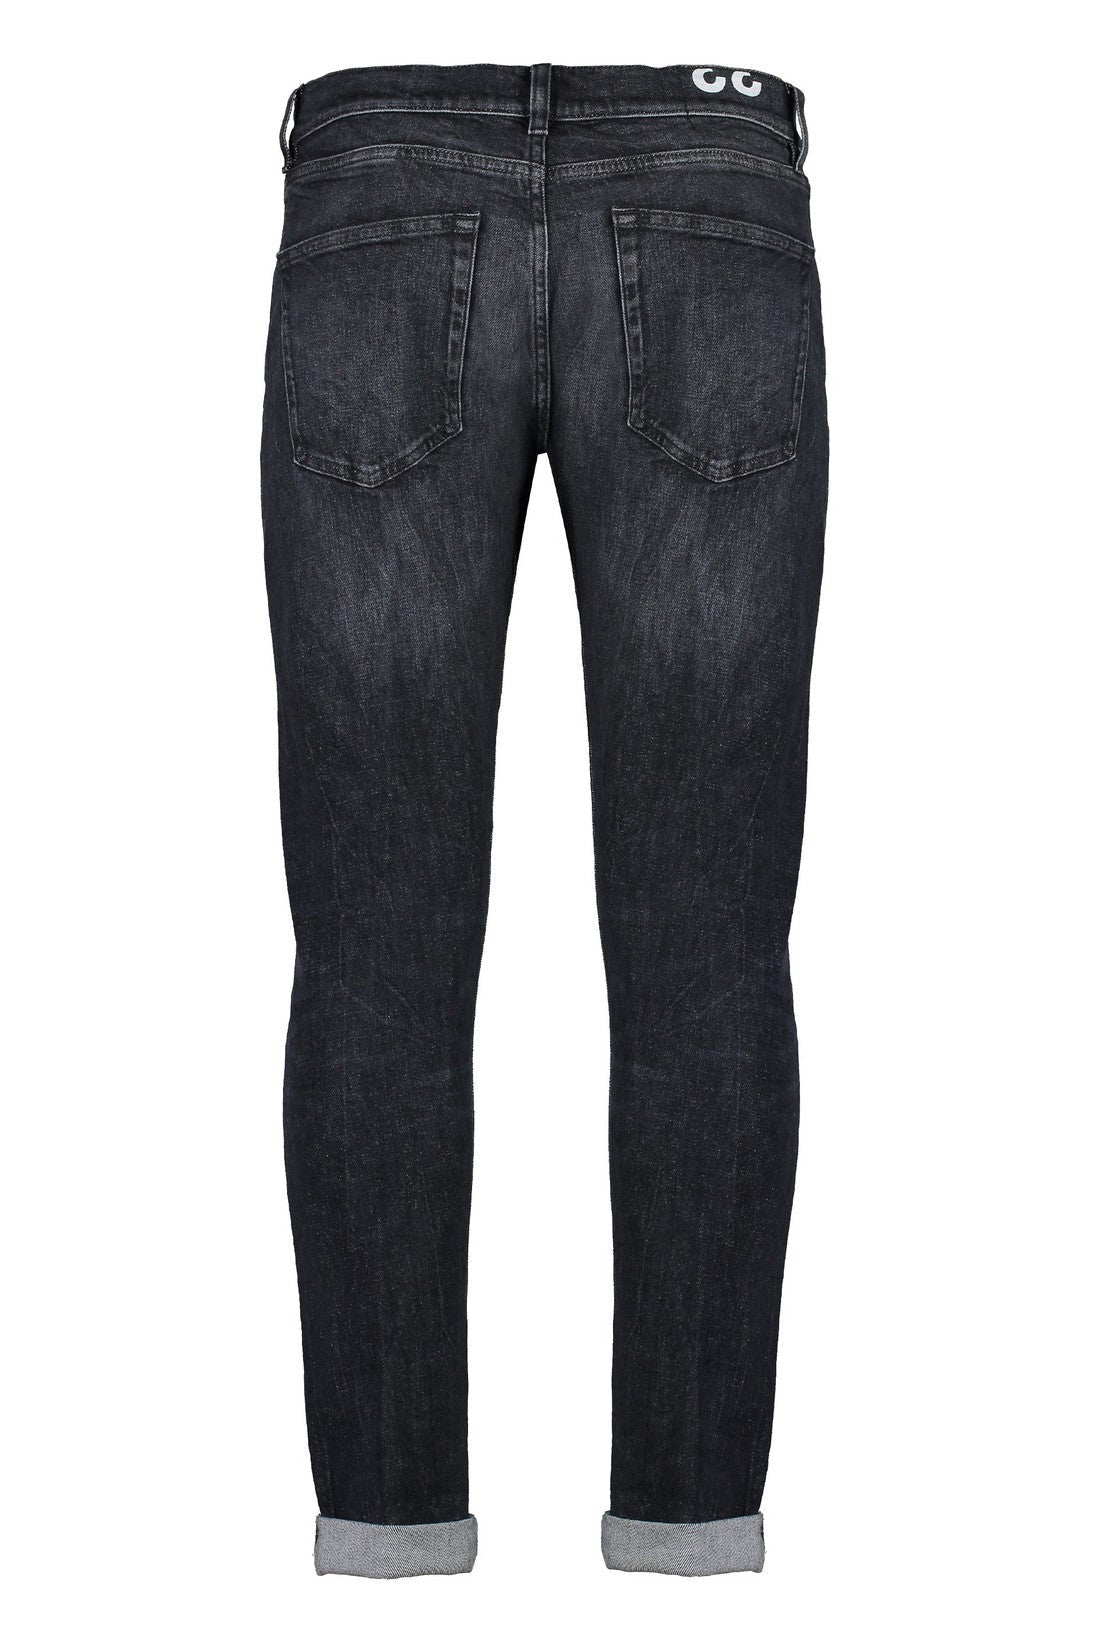 Dondup-OUTLET-SALE-Icon stretch cotton jeans-ARCHIVIST